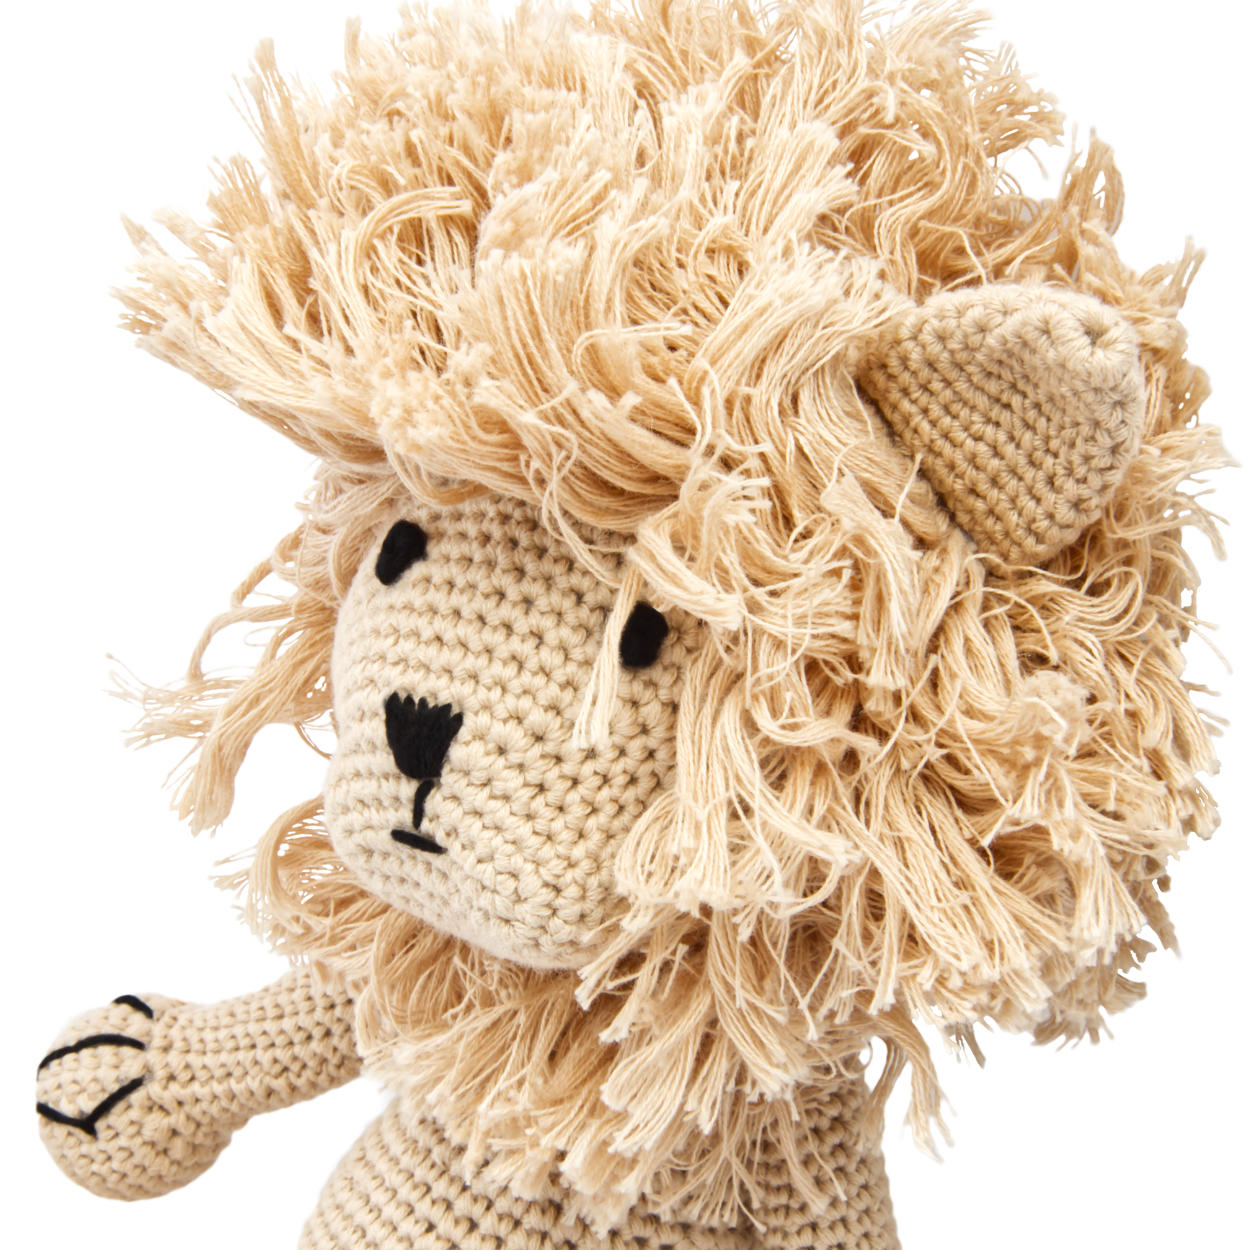 Handgestrickter Löwe Lionel gehäkelt Spielzeug 32 cm aus Baumwolle